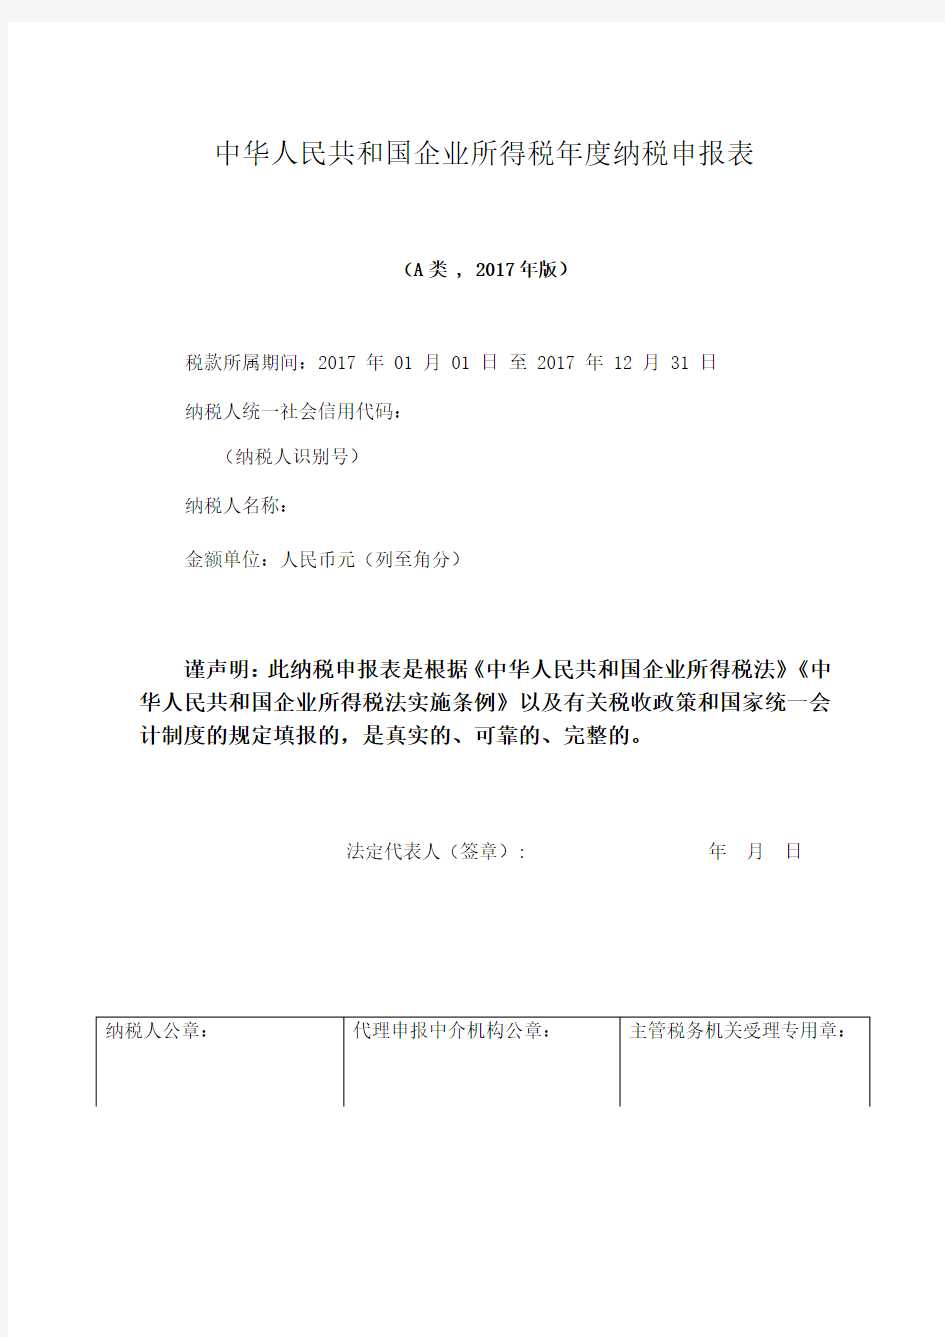 中华人民共和国企业所得税年度纳税申报表A类版